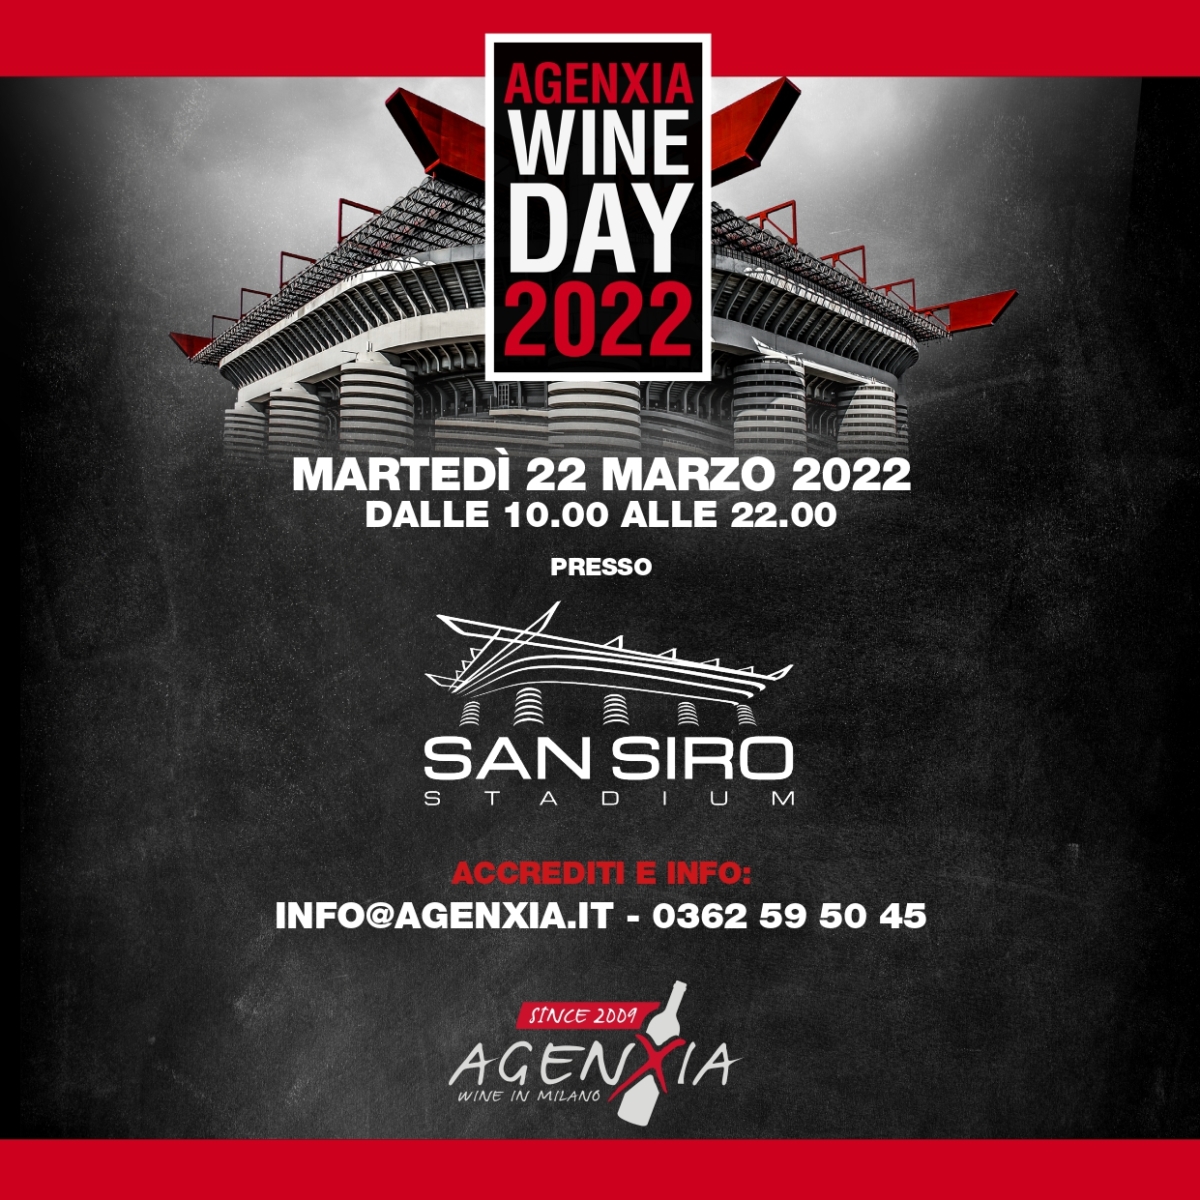 Agenxia Wine Day 2022